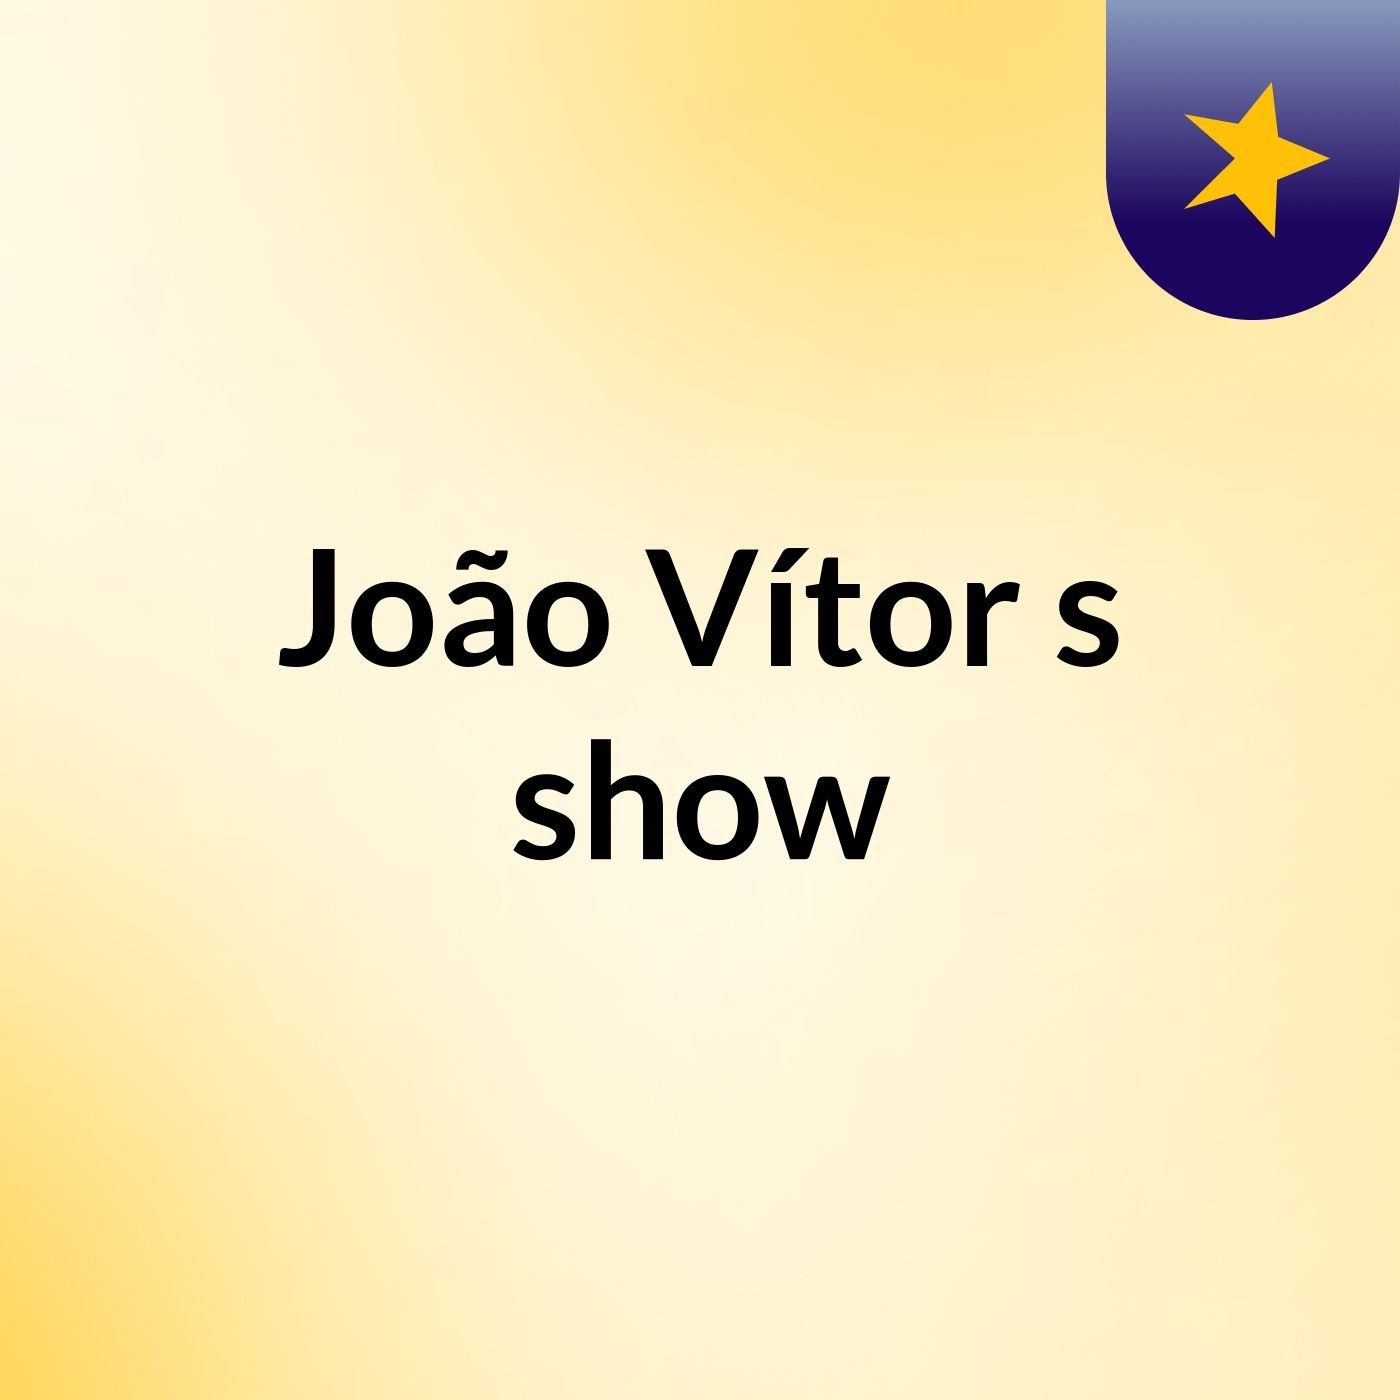 João Vítor's show